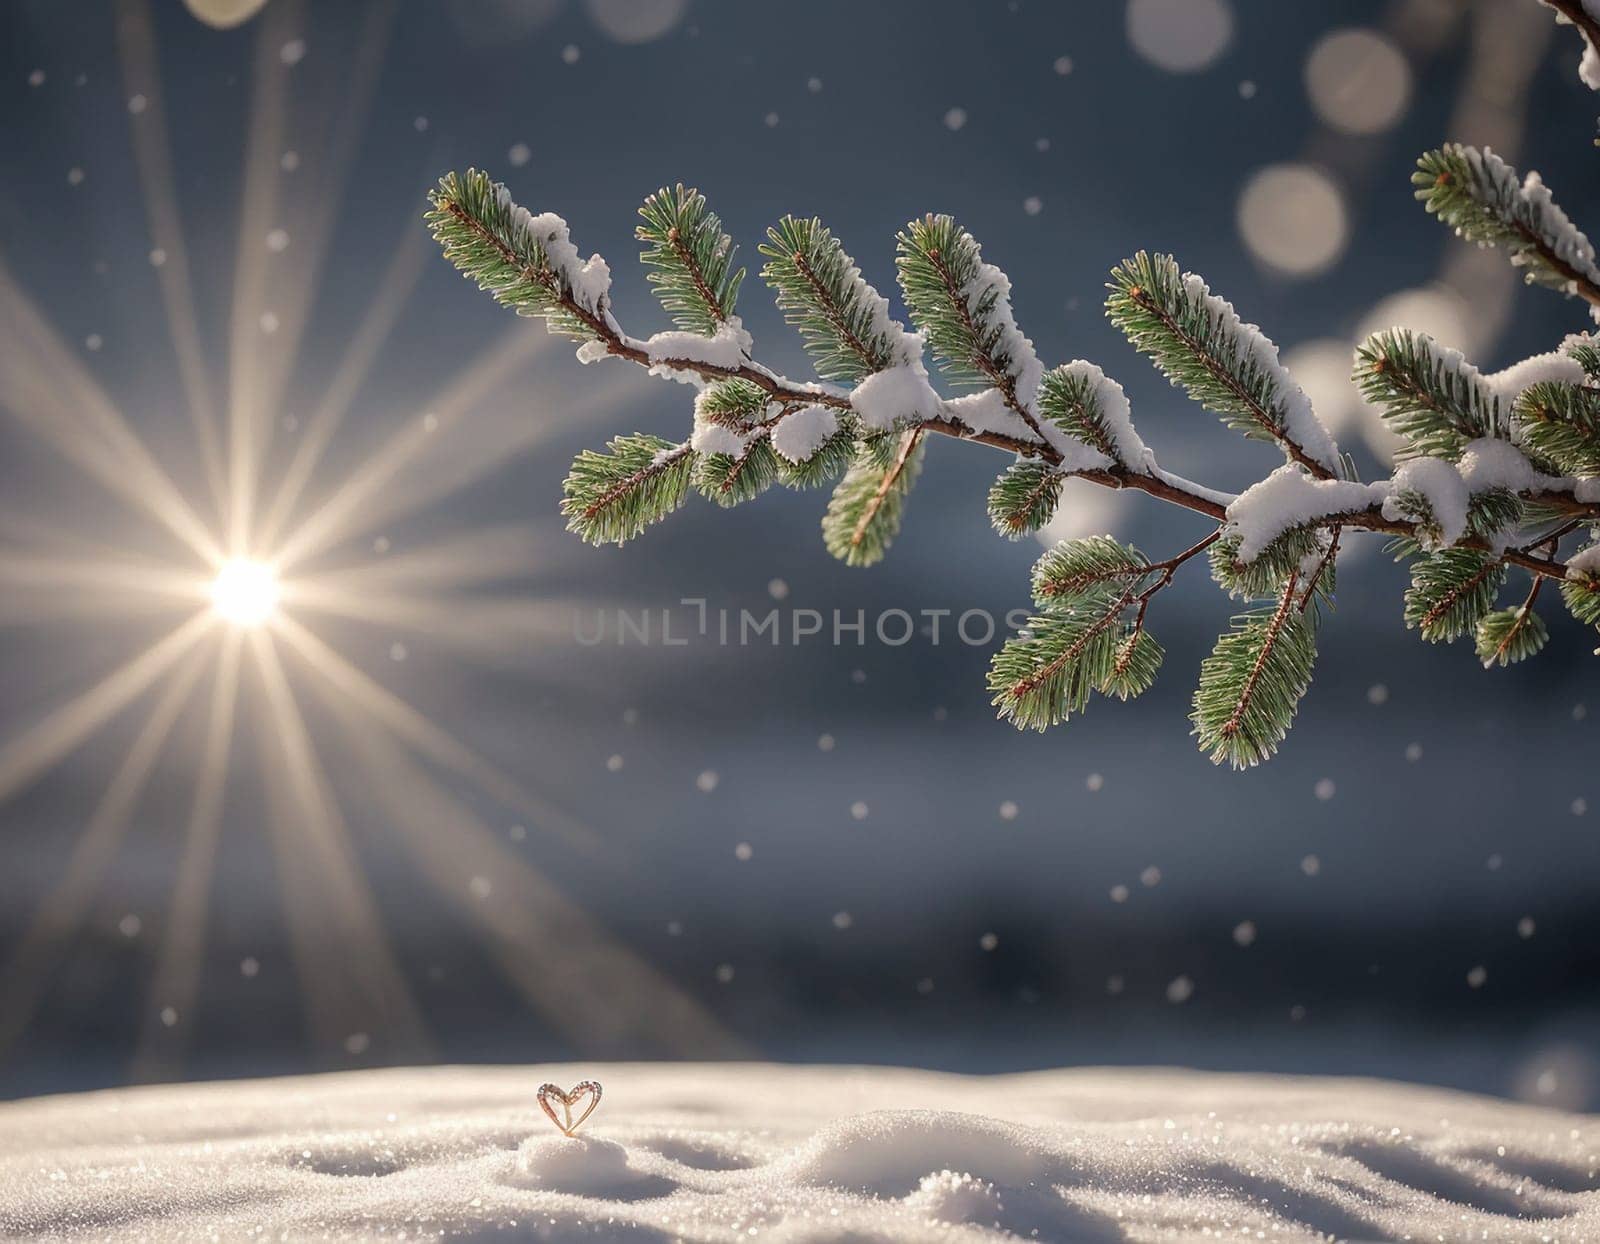 Beautiful winter landscape by NeuroSky